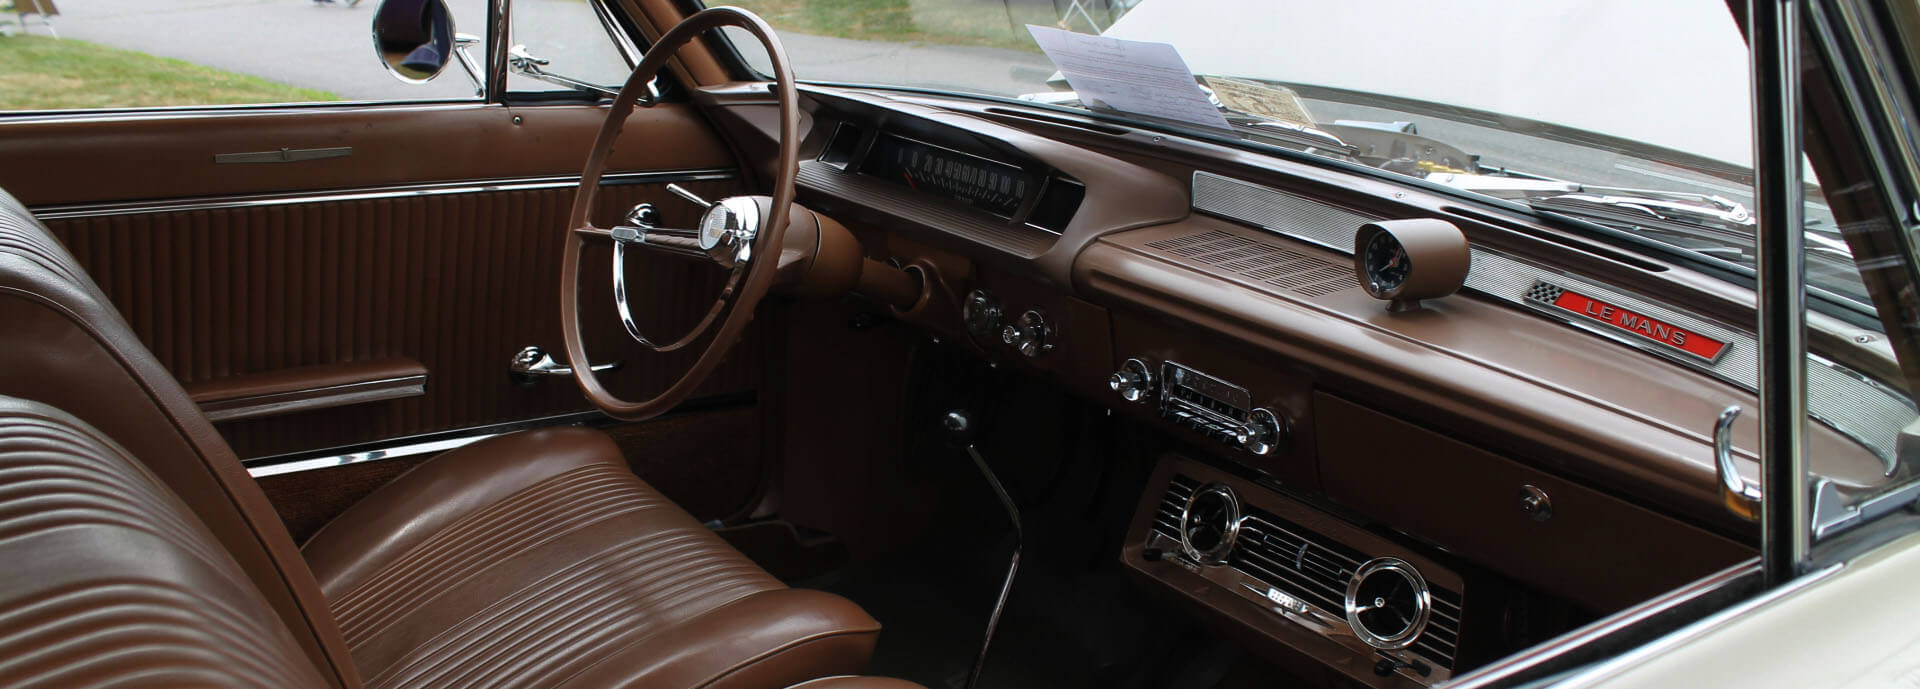 Oldsmobile Cutlass dash kit